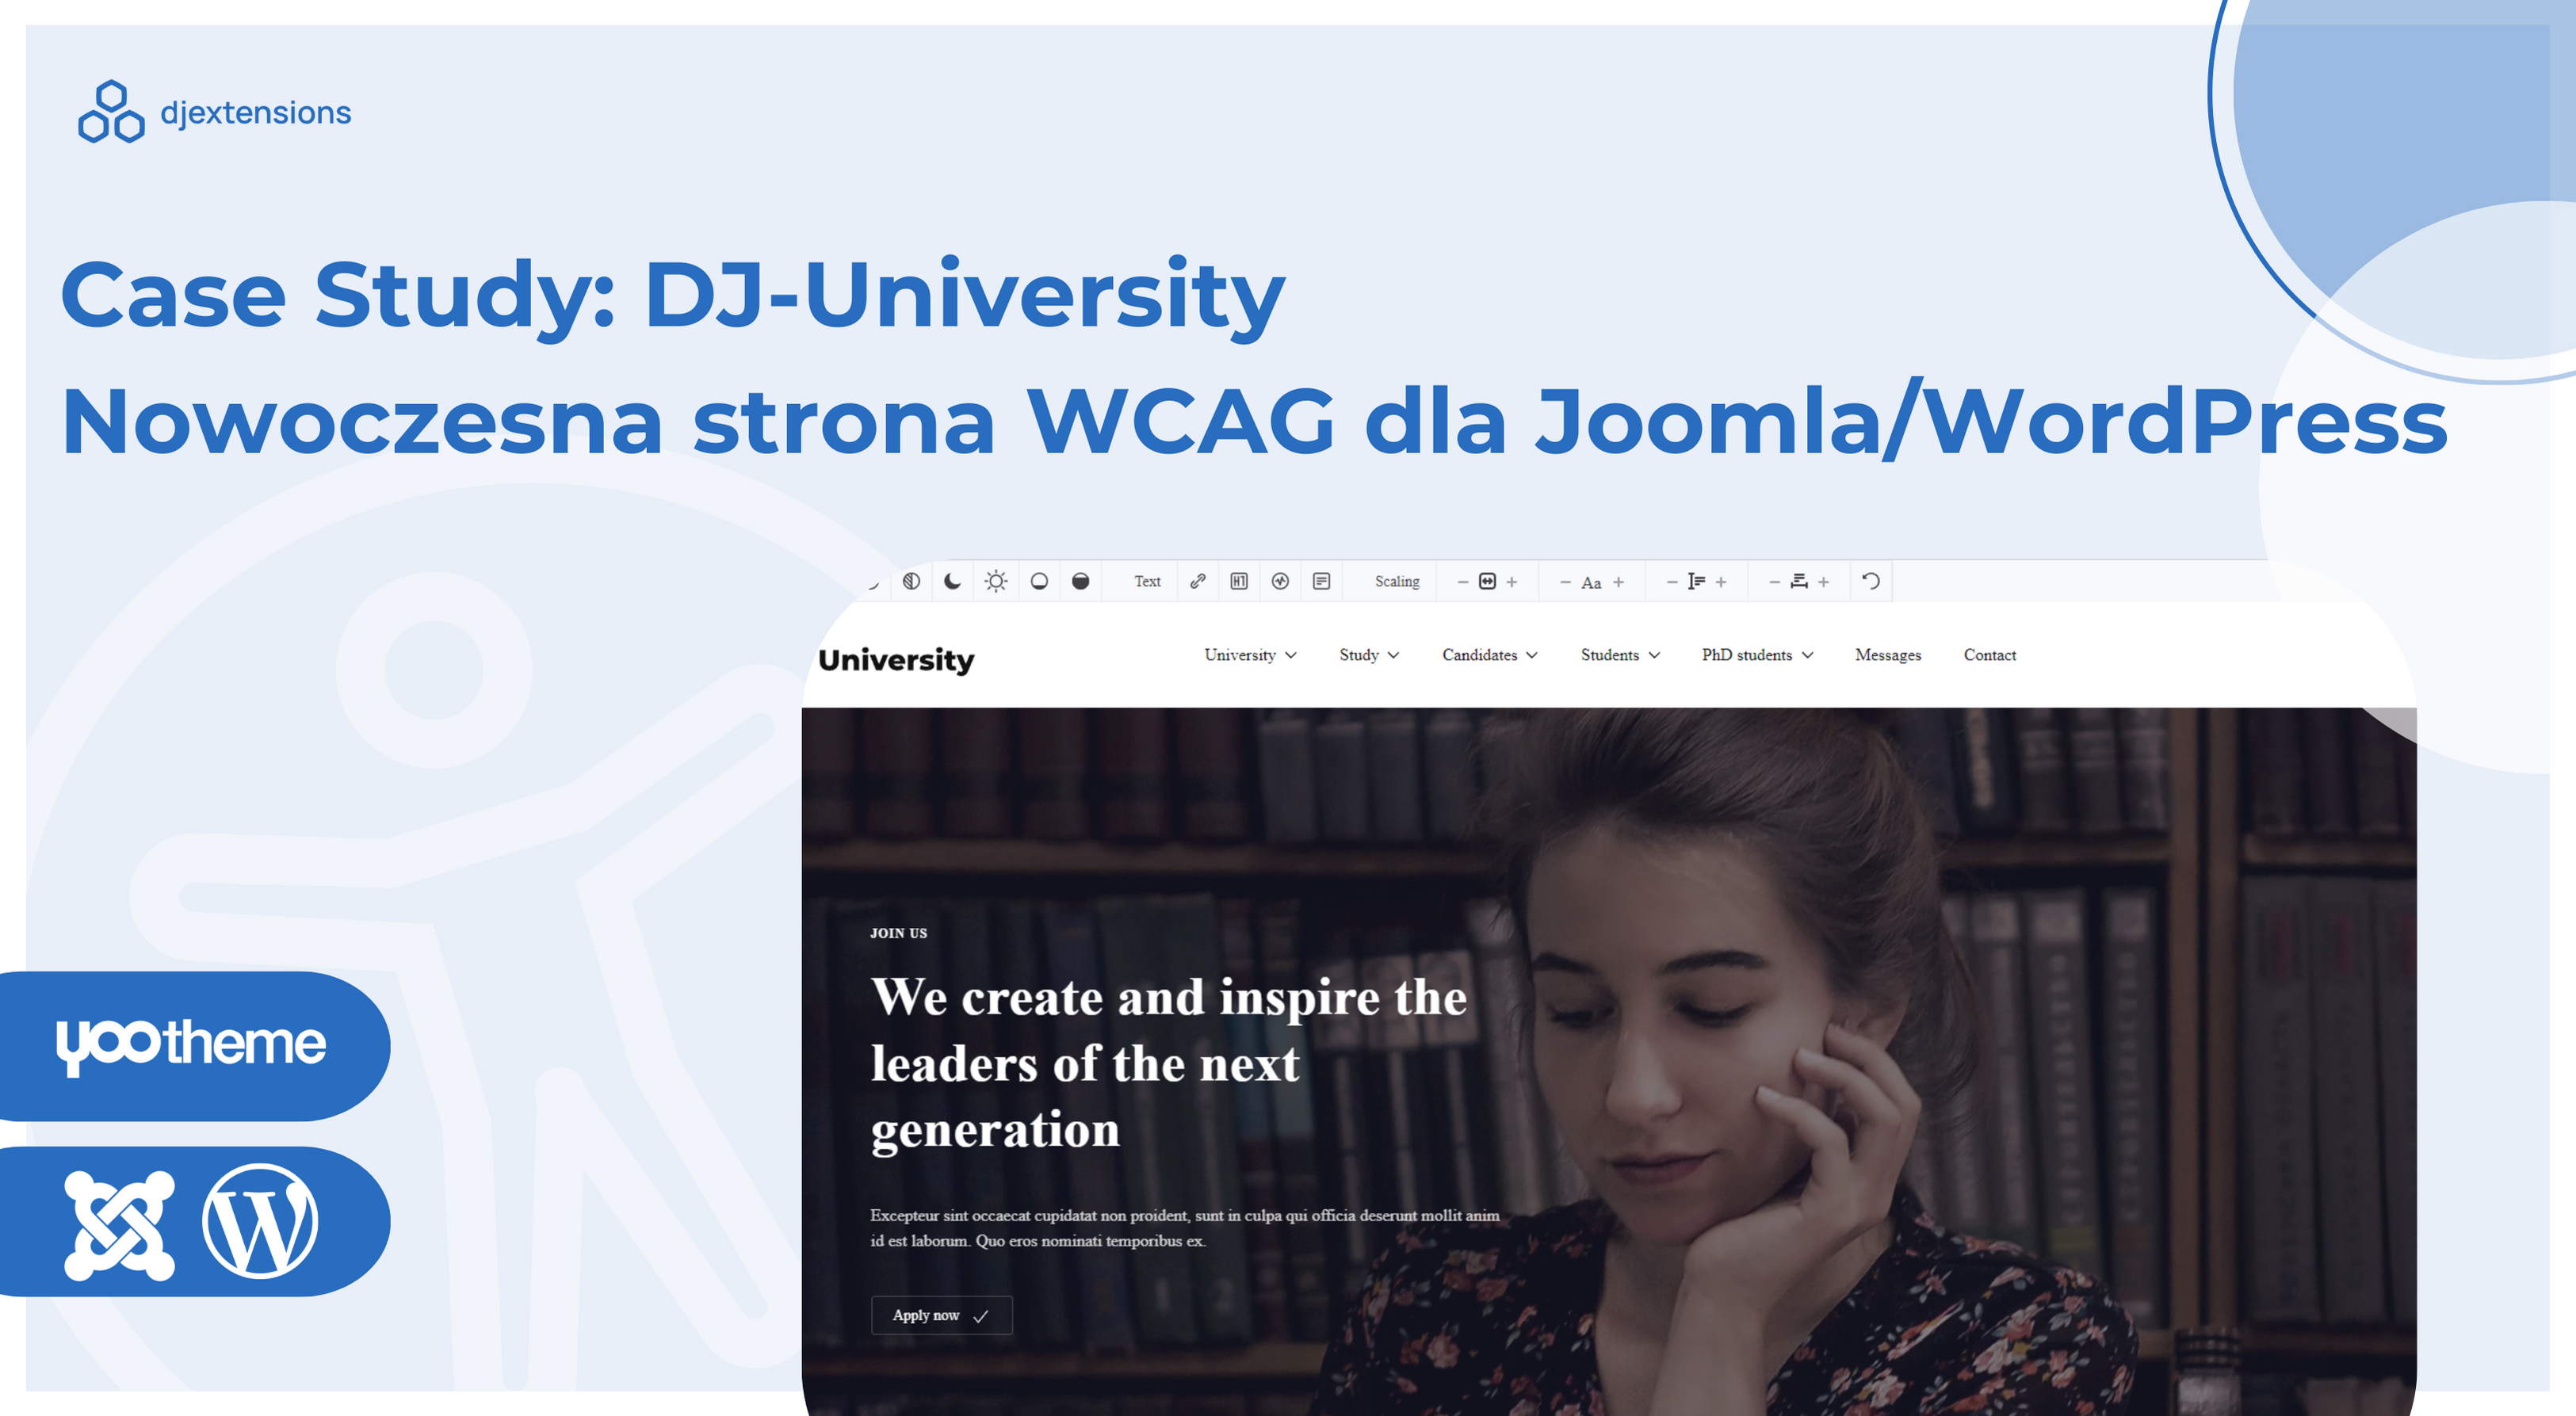 Case study: DJ-University - kompletne rozwiązanie dla strony WCAG